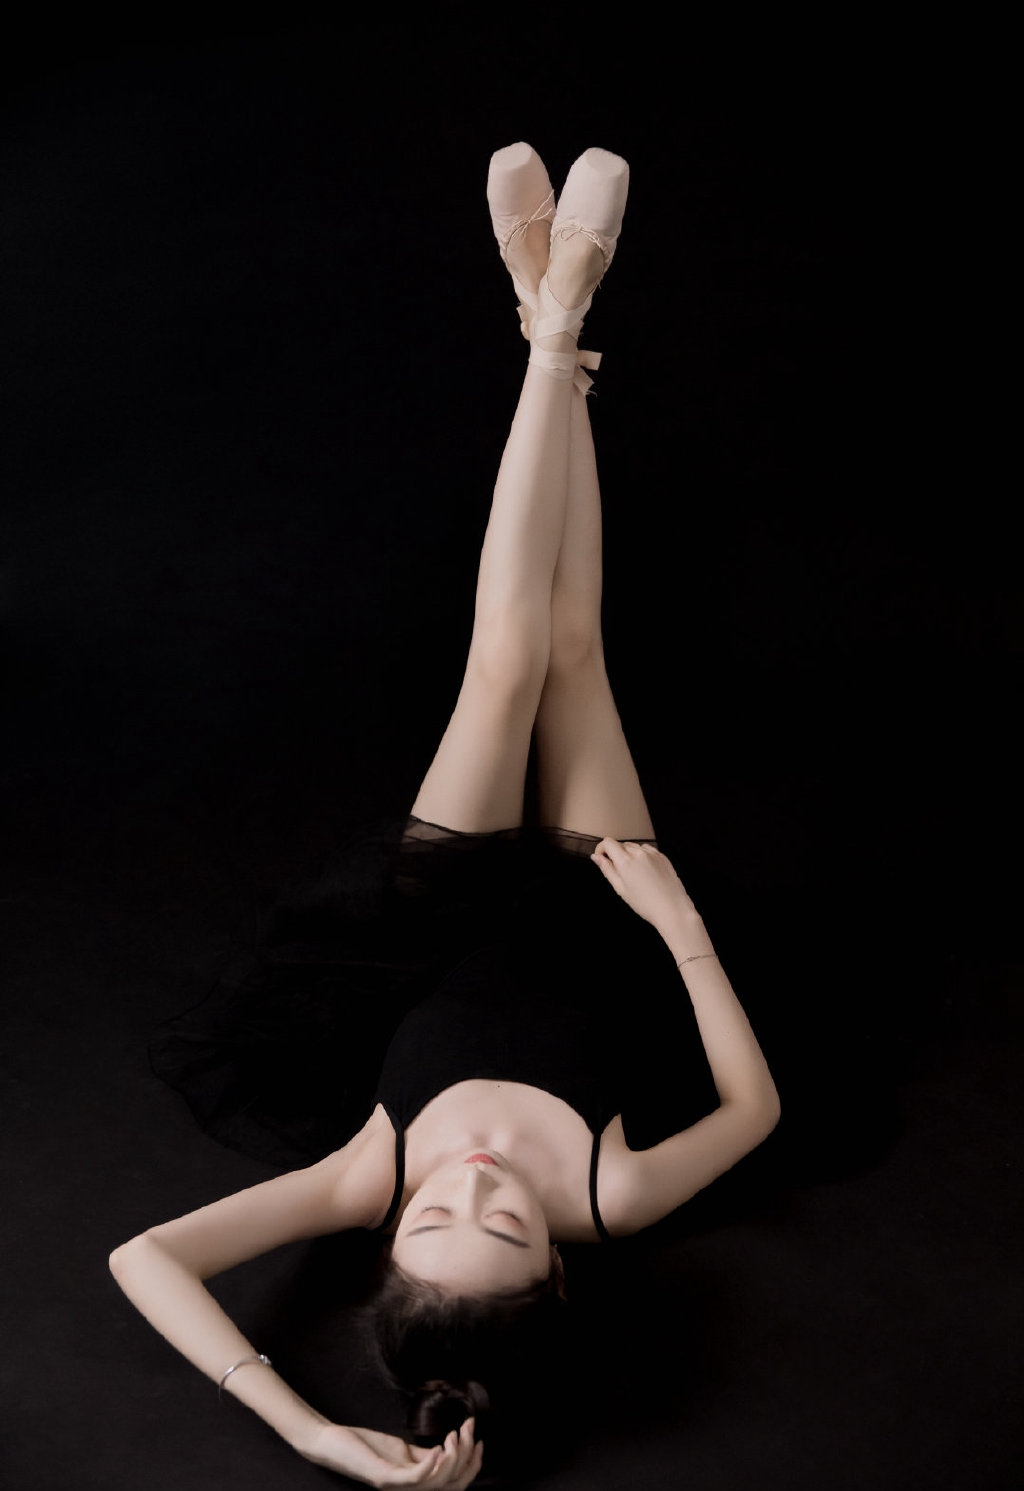 芭蕾舞性感长腿美女黑天鹅私人艺术摄影  第2张